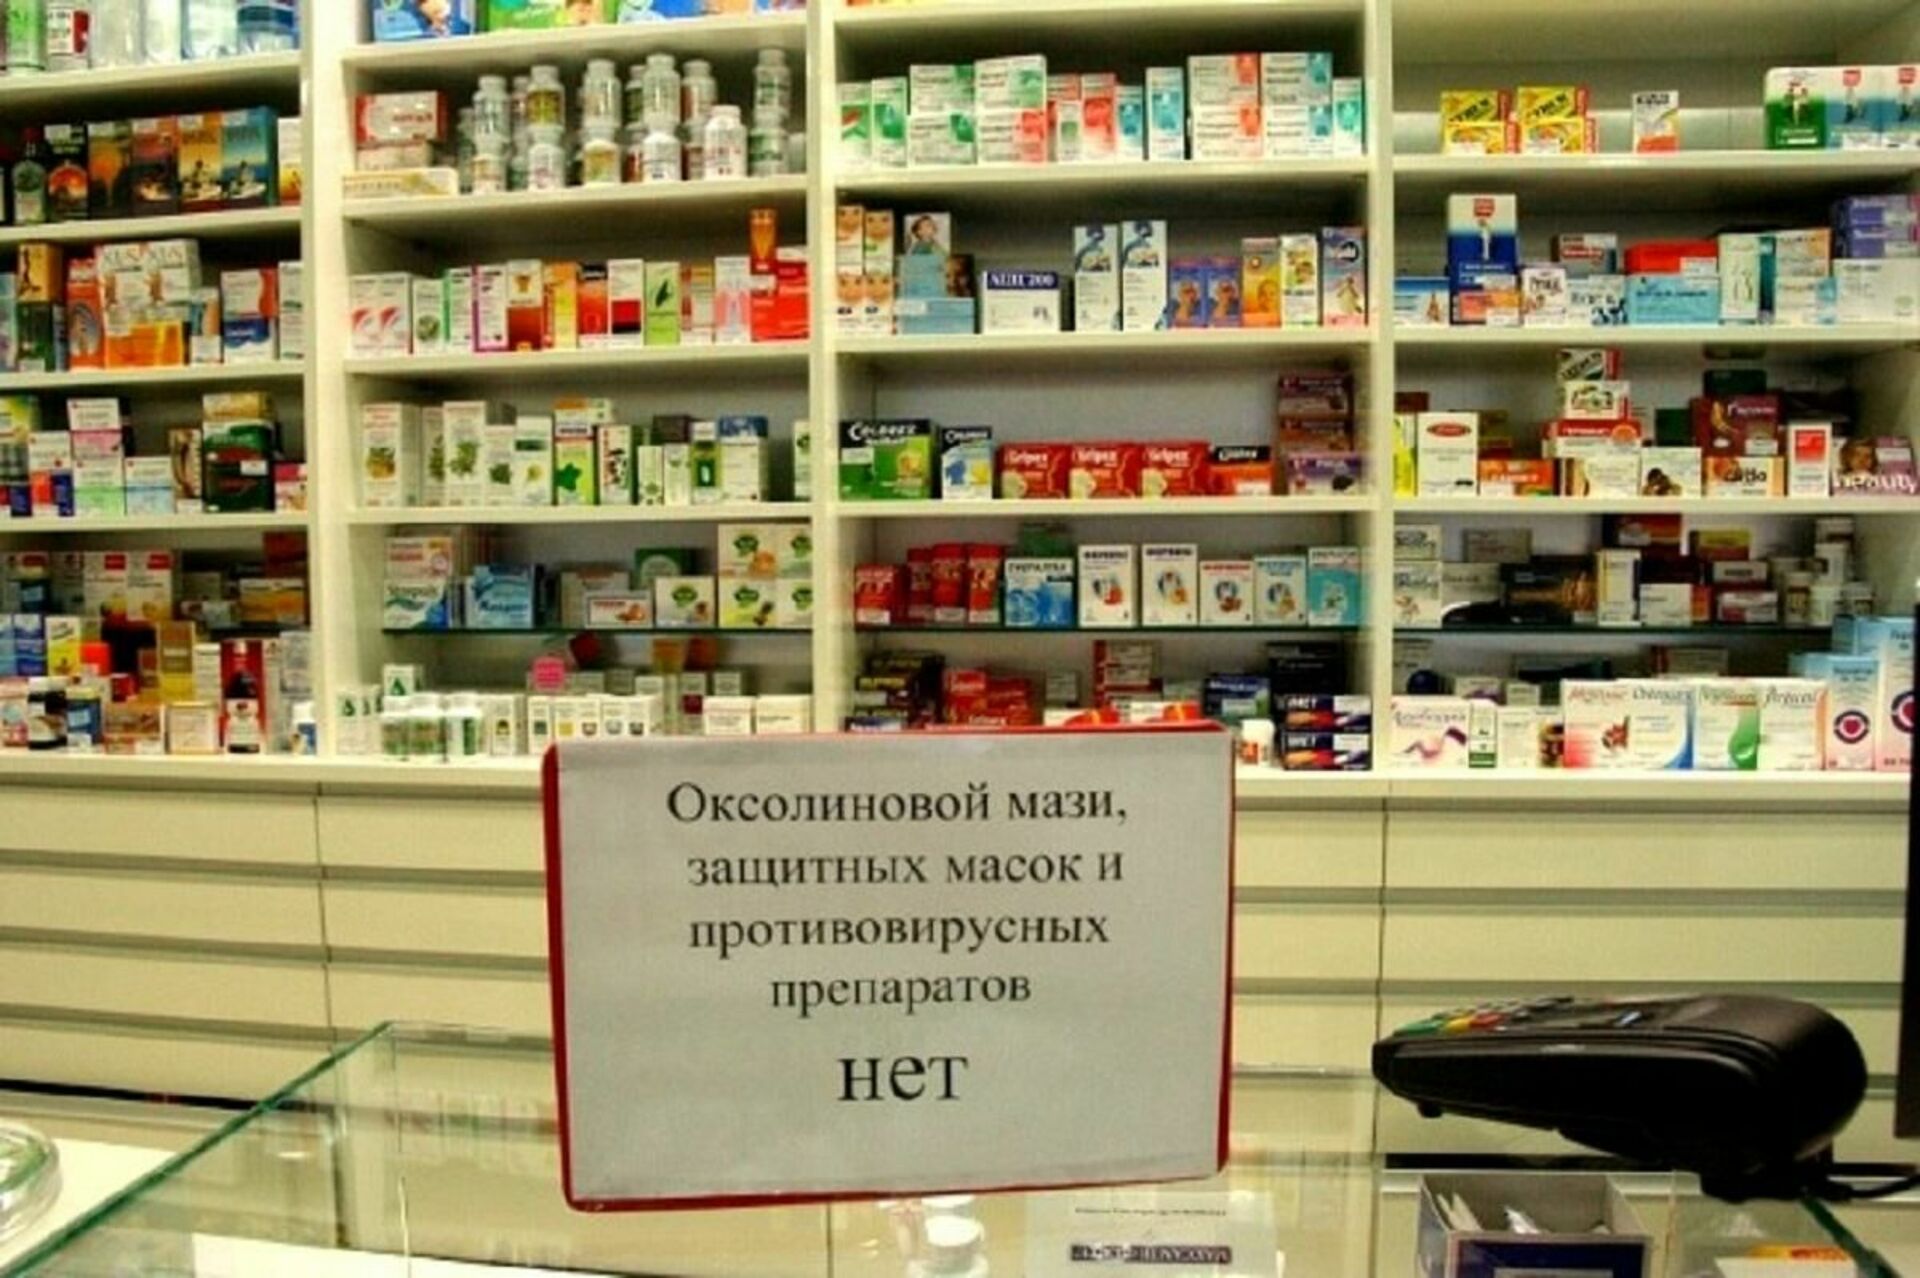 Аптекарь поиск лекарств. Лекарственные препараты в аптеке. Аптека таблетки. Нет лекарств в аптеке. Импортные лекарства.